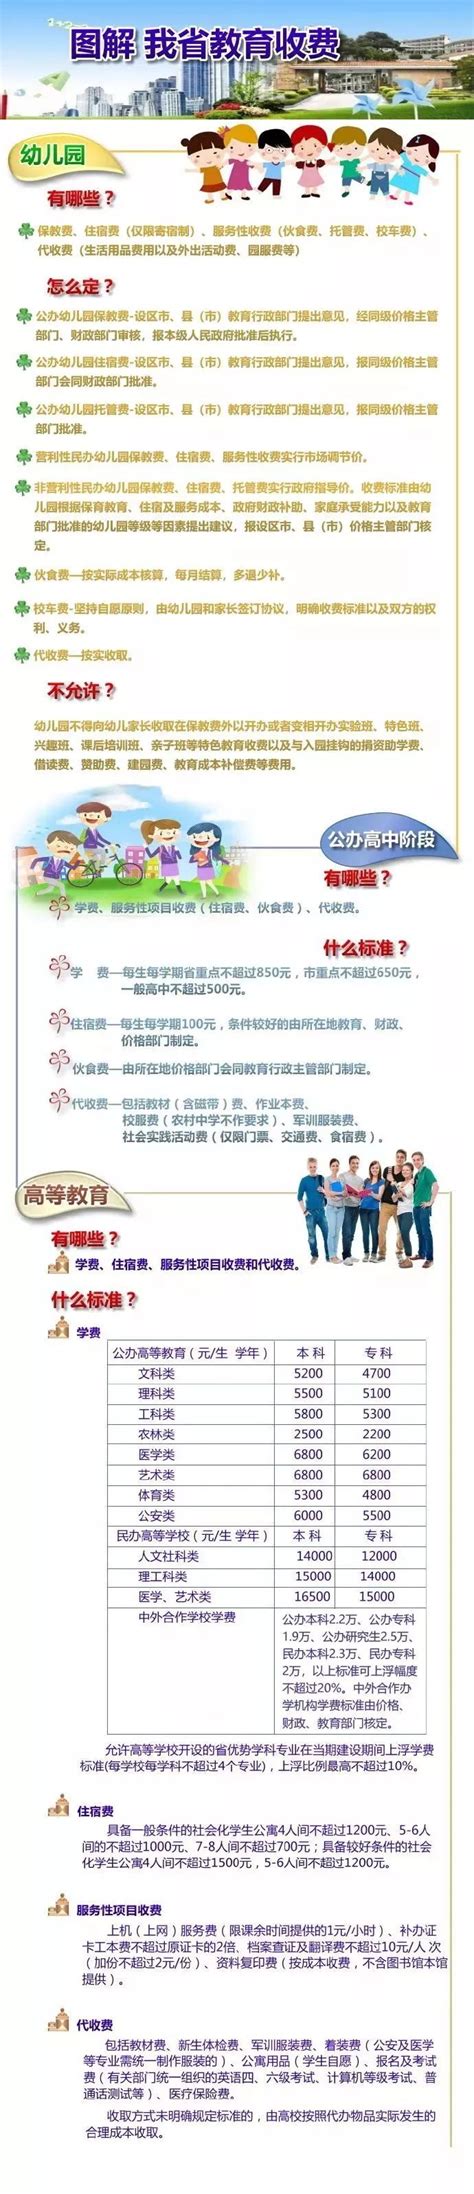 张浦镇第二幼儿园2019~2020第一学期收费标准